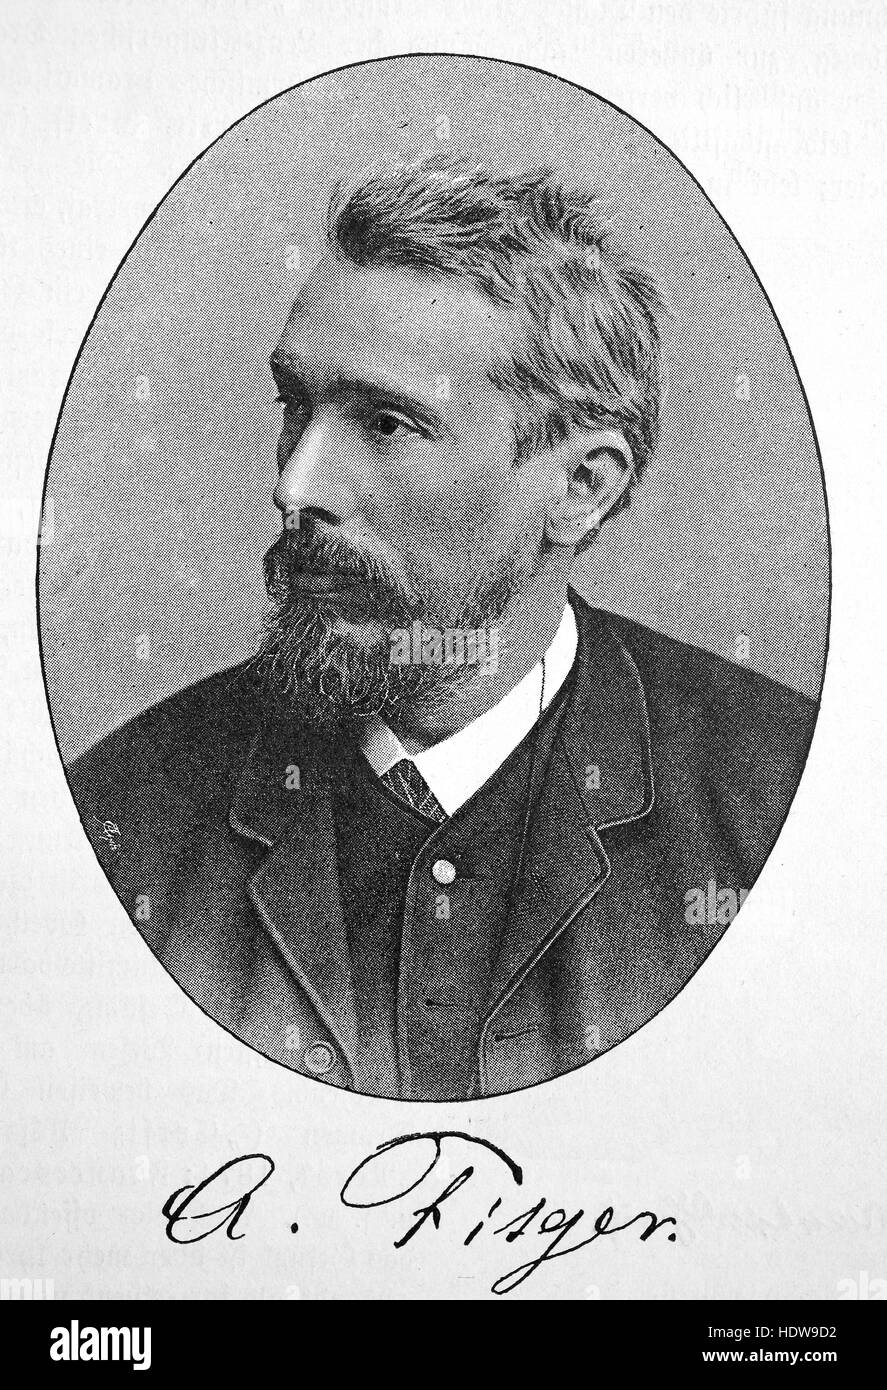 Arthur Heinrich Wilhelm Lazerges, 1840 - 1909, peintre allemand, critique d'art, dramaturge et poète, gravure sur bois de l'année 1880 Banque D'Images